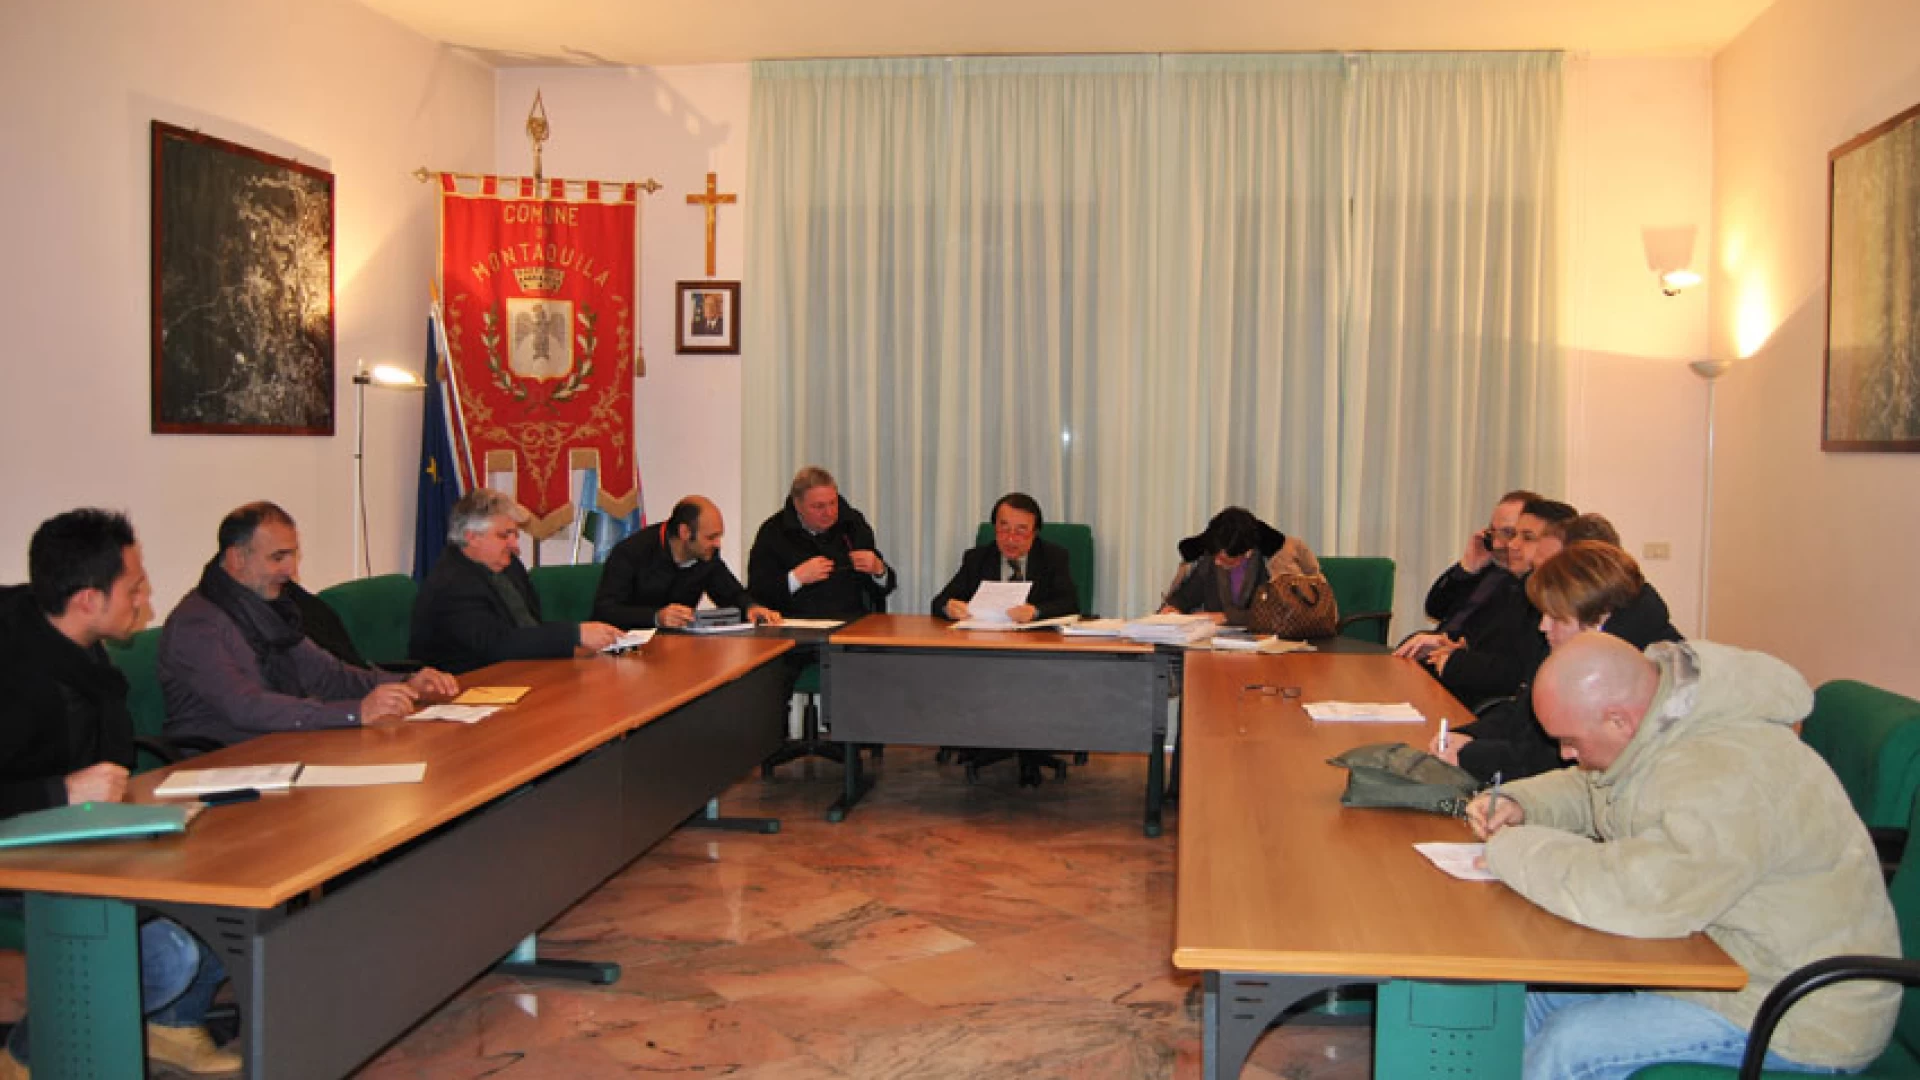 Montaquila: il sindaco Franco Rossi chiude la scuola dell’infanzia di Roccaravindola. Emanata l’ordinanza numero 11 del 2016.